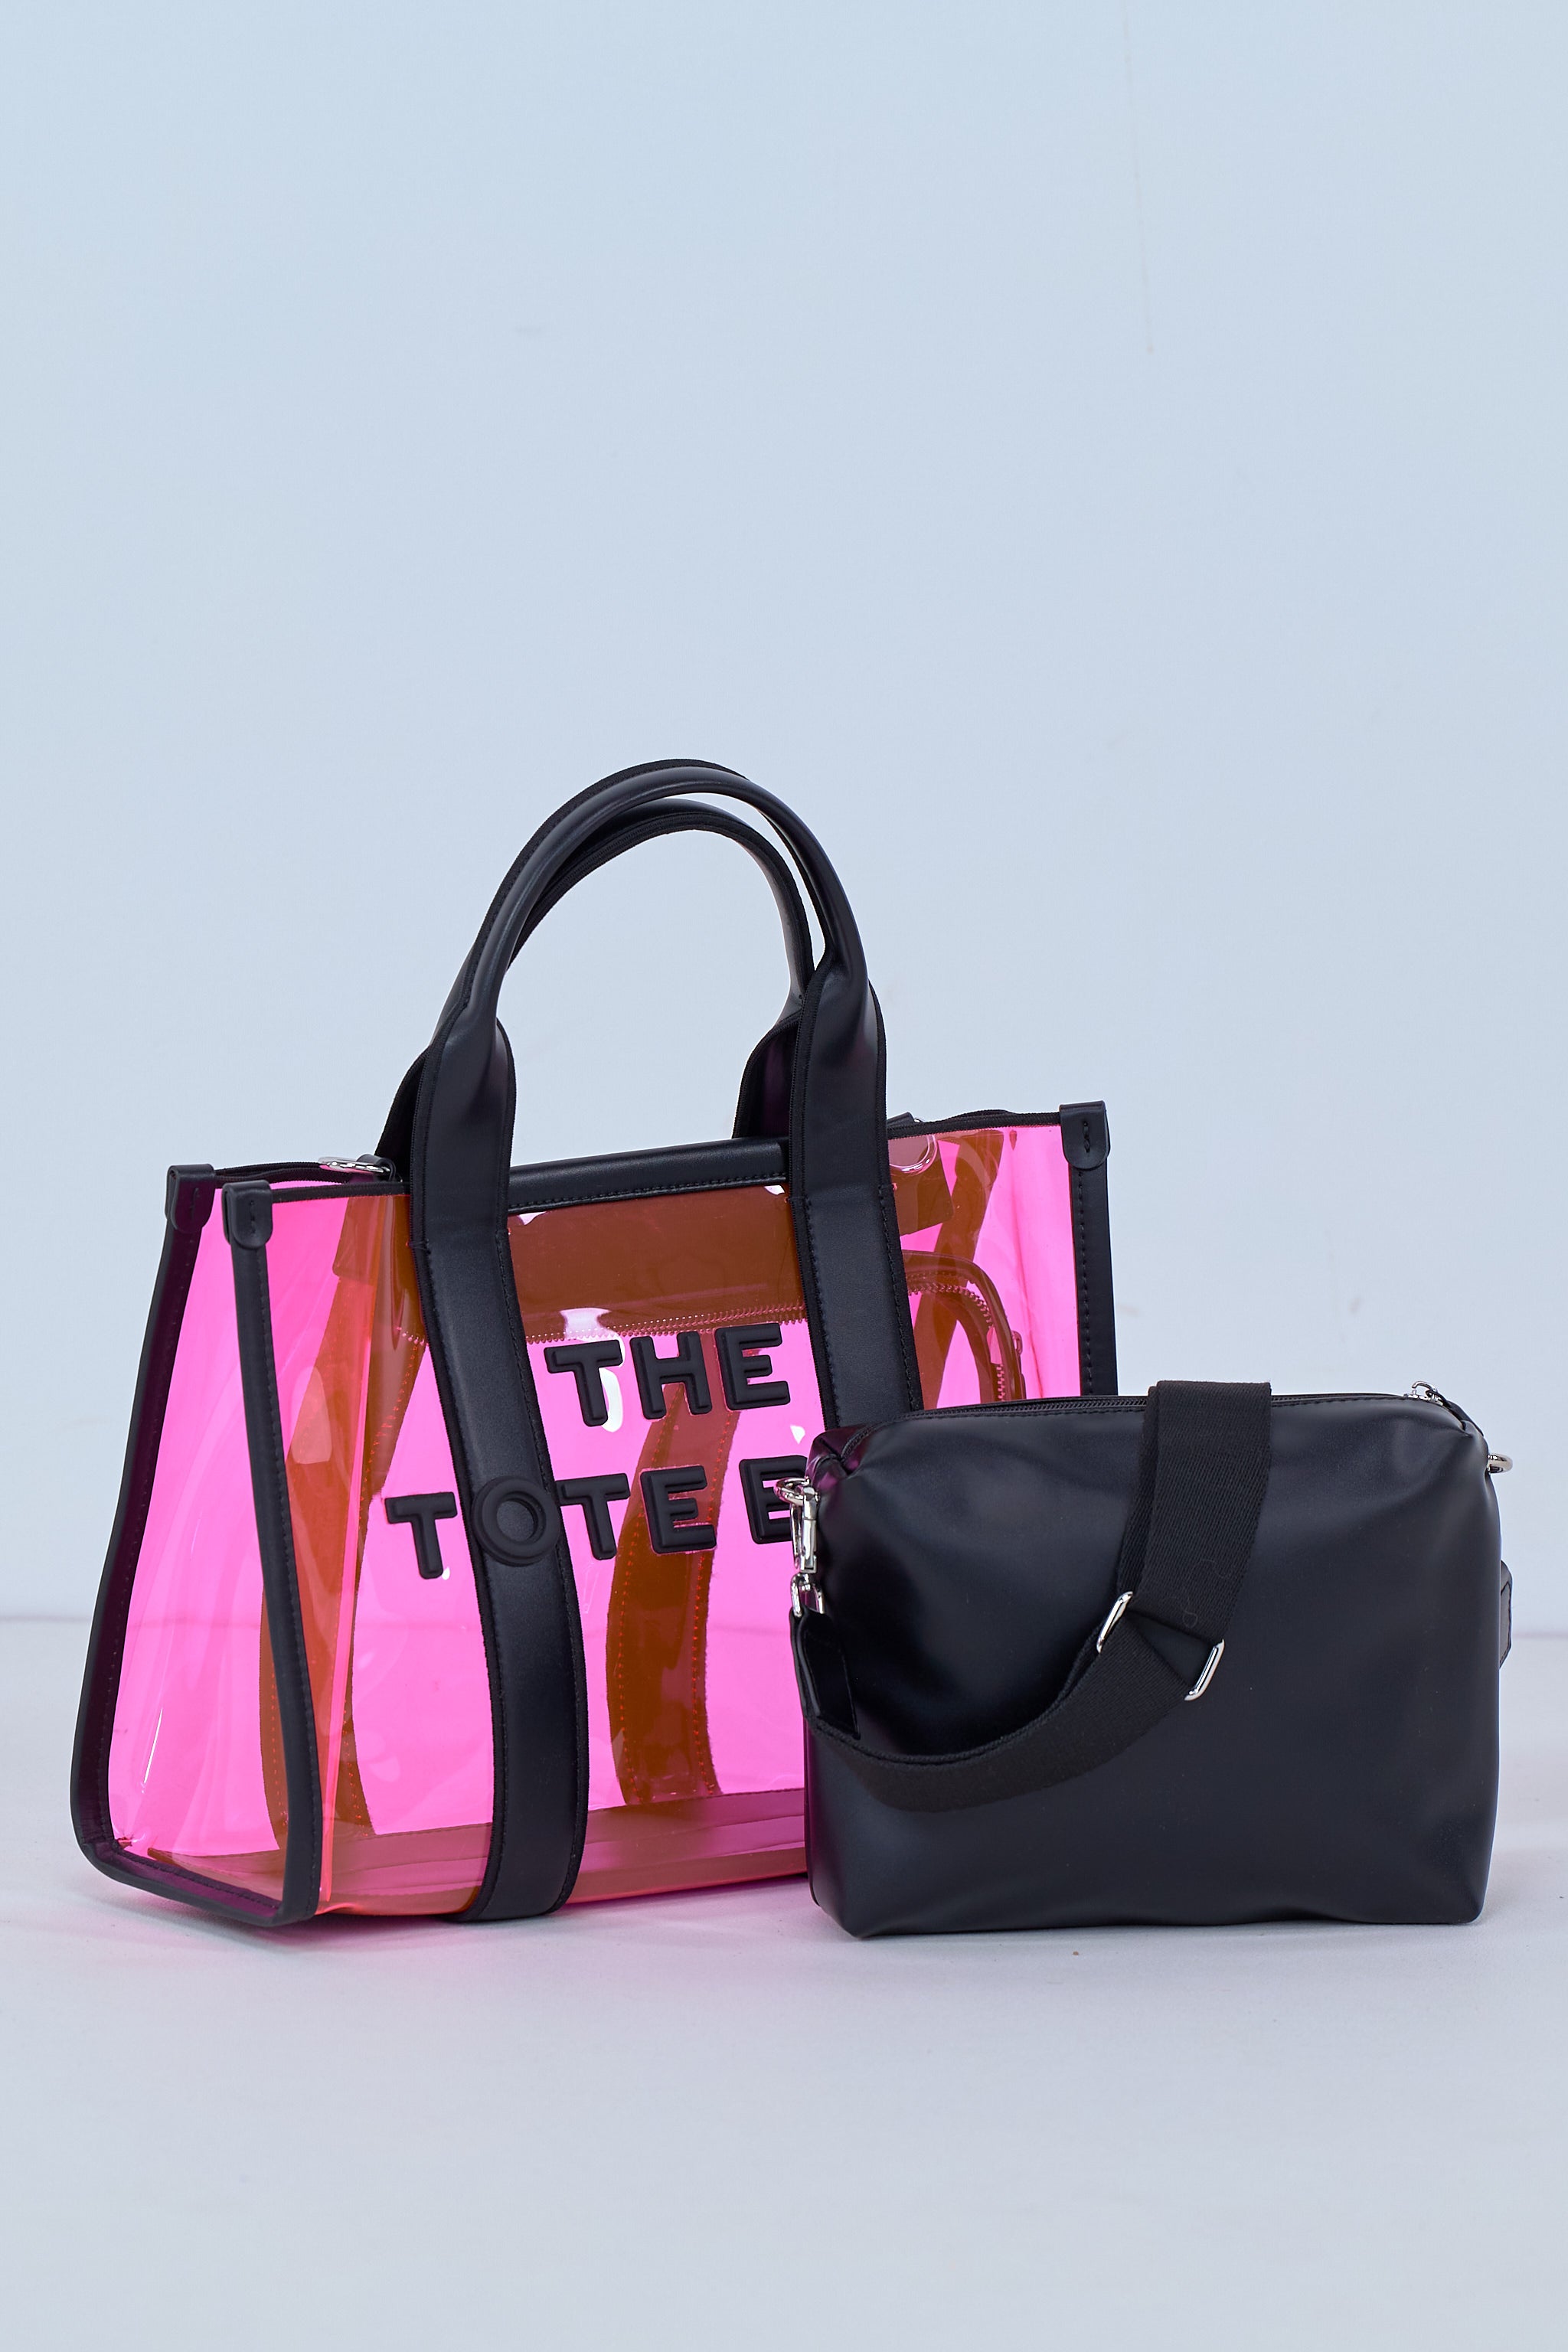 Hochwertige PVC Bag in Bag, pink